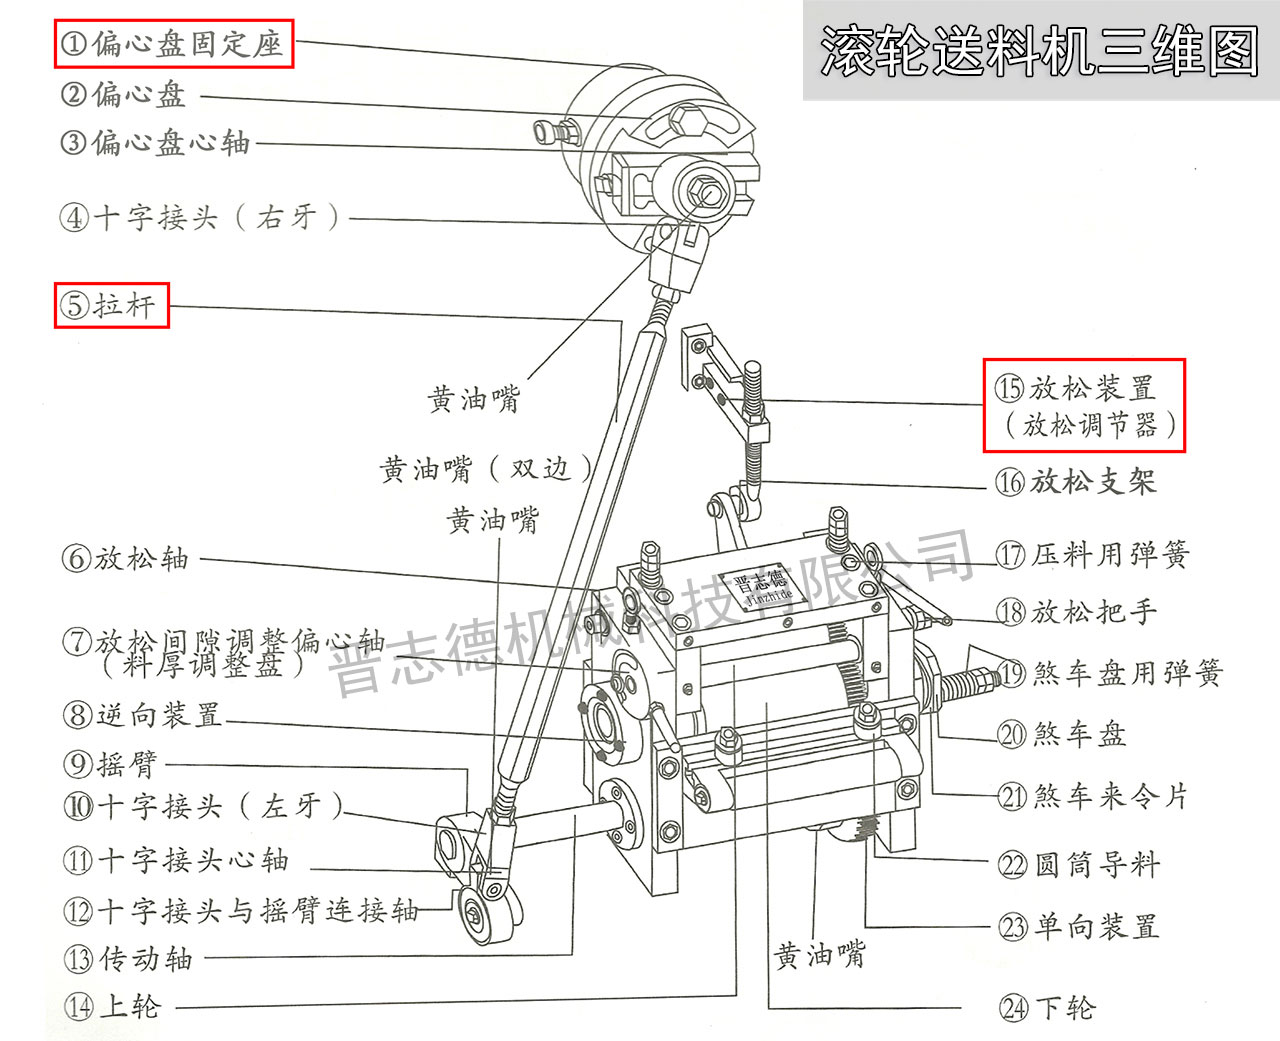 滚轮送料机设计图,高速滚轮送料机结构图,滚轮送料机三维图